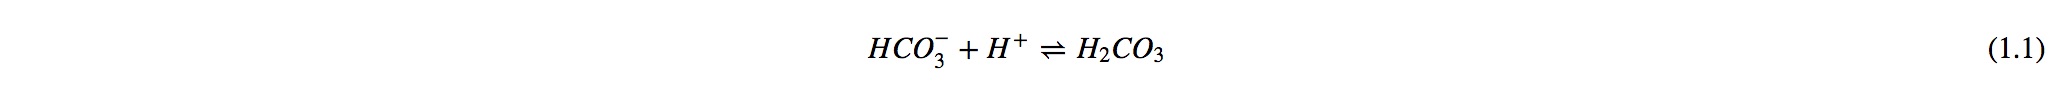 formula 1.jpg